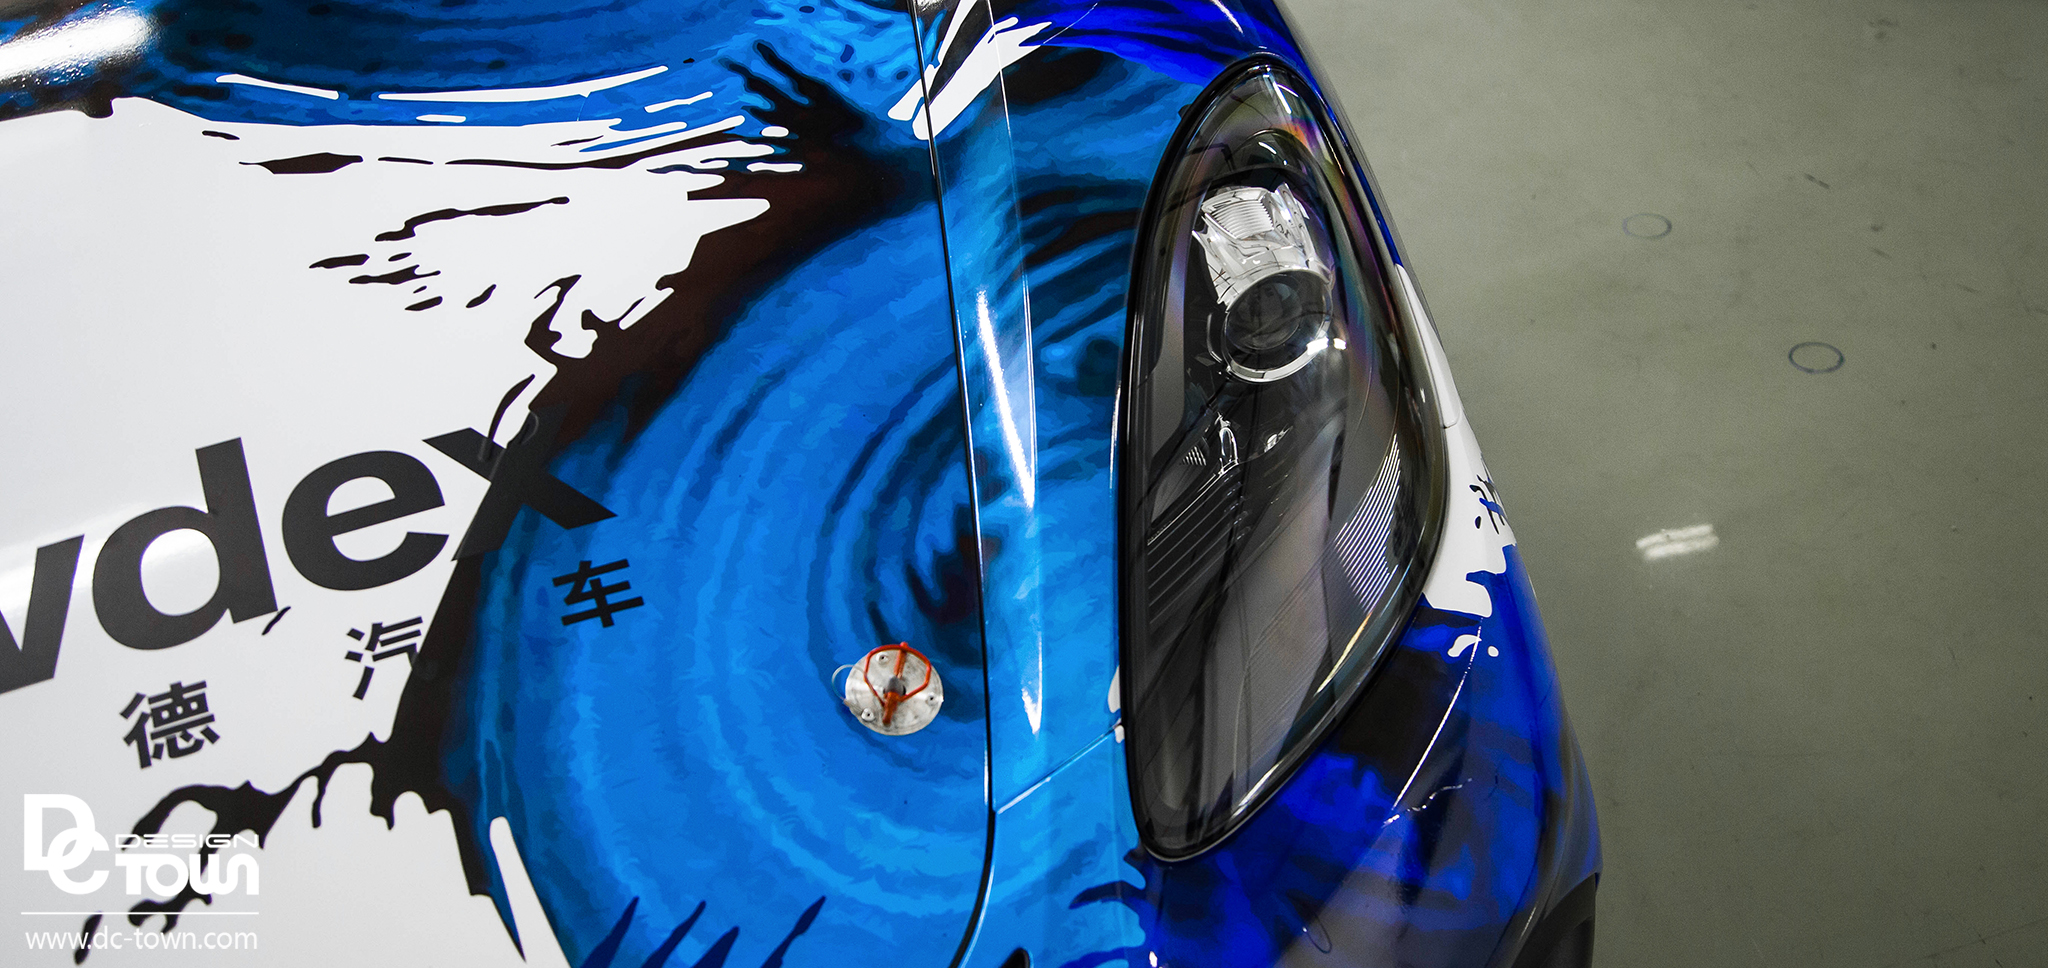 保时捷GT4 赛车涂装设计